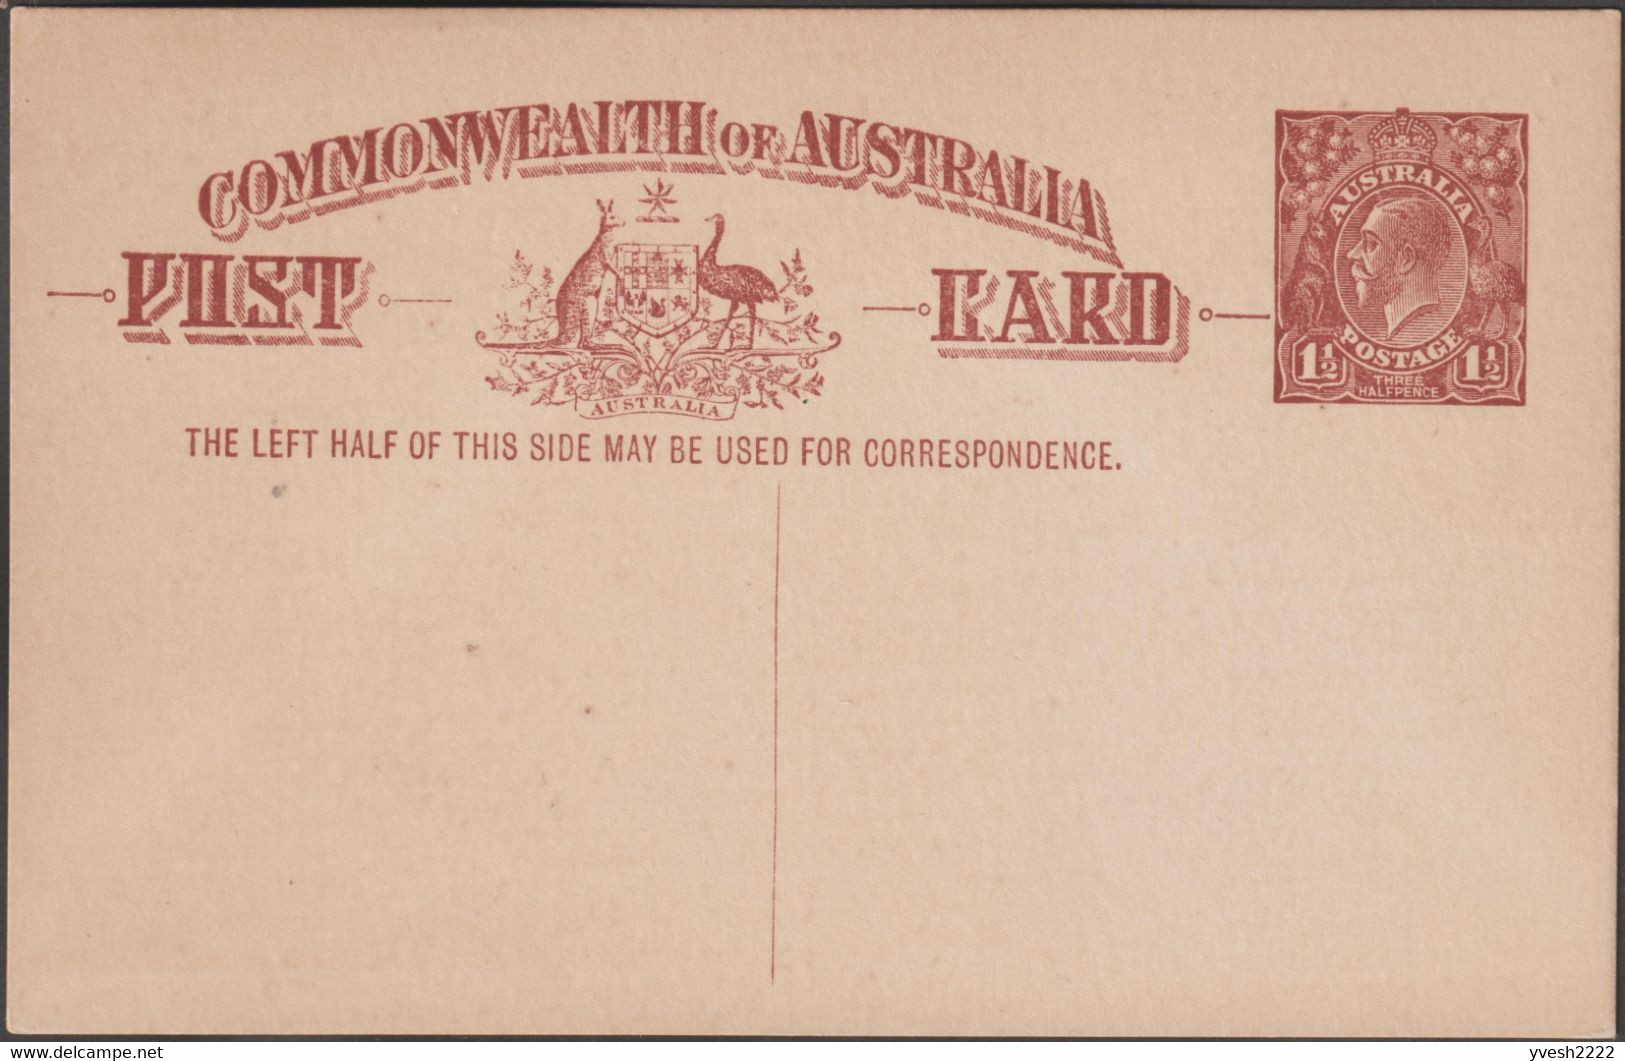 Australie 1922. 3 entiers postaux à 1½ penny à l'effigie de George V. 3 couleurs différentes. Kangourou et émeu